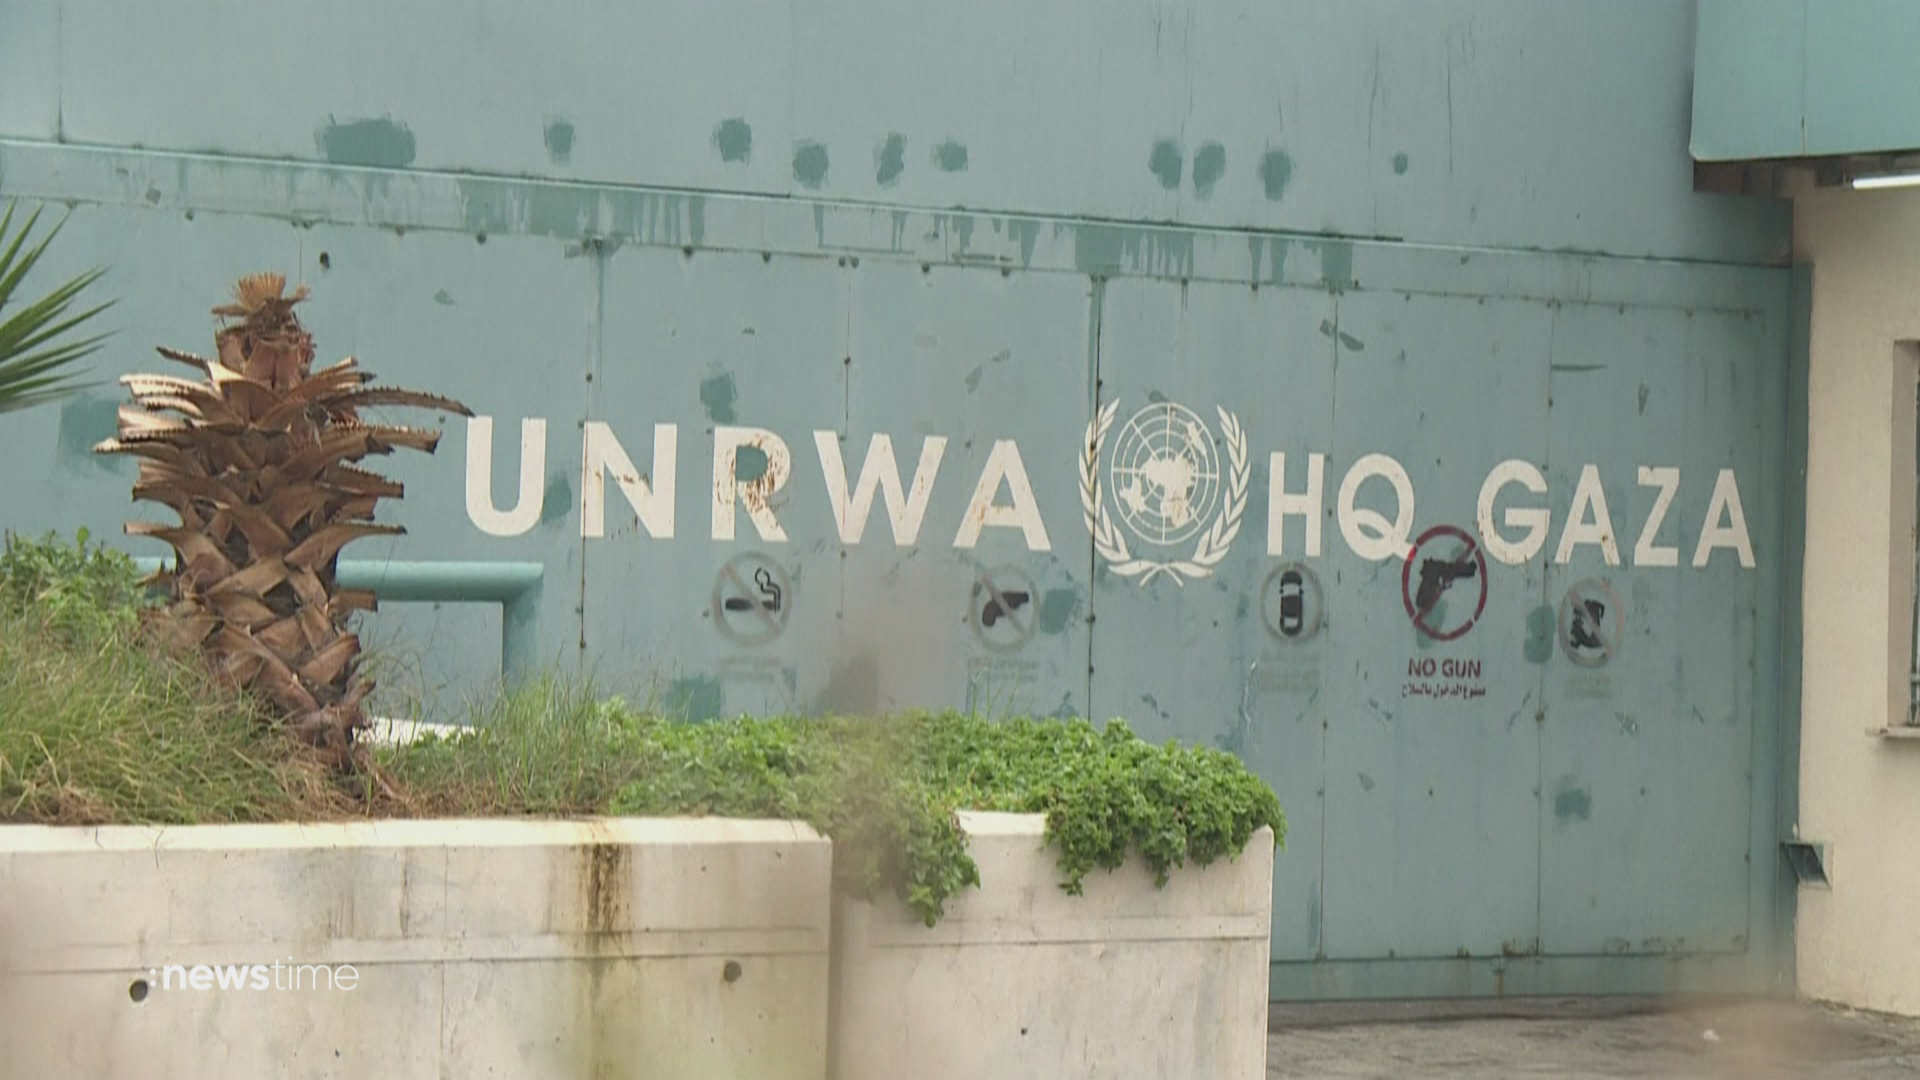 Länder stoppen Zahlungen: UN-Mitarbeiter an Hamas-Terror beteiligt?